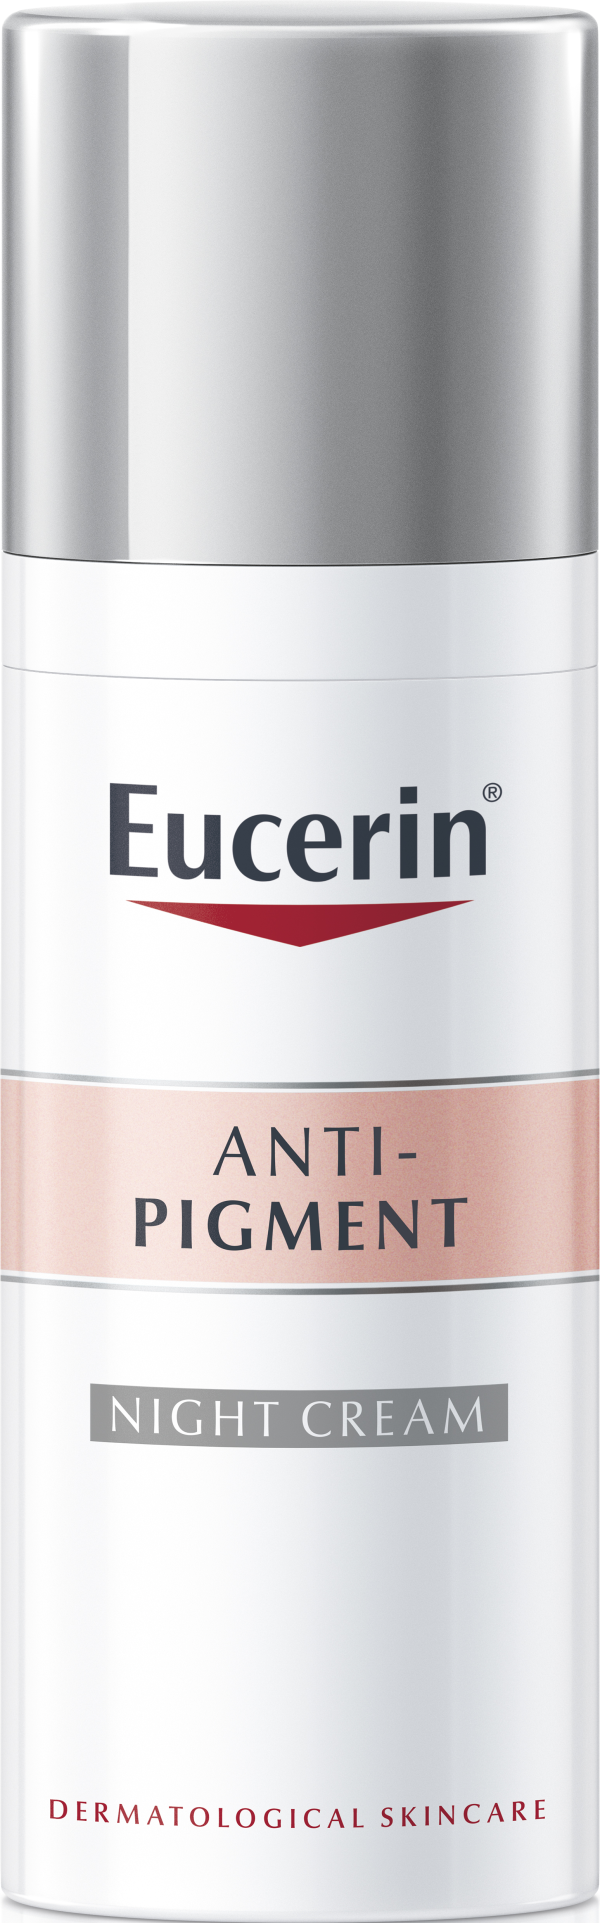 Eucerin Anti-Pigment night cream 50 ml